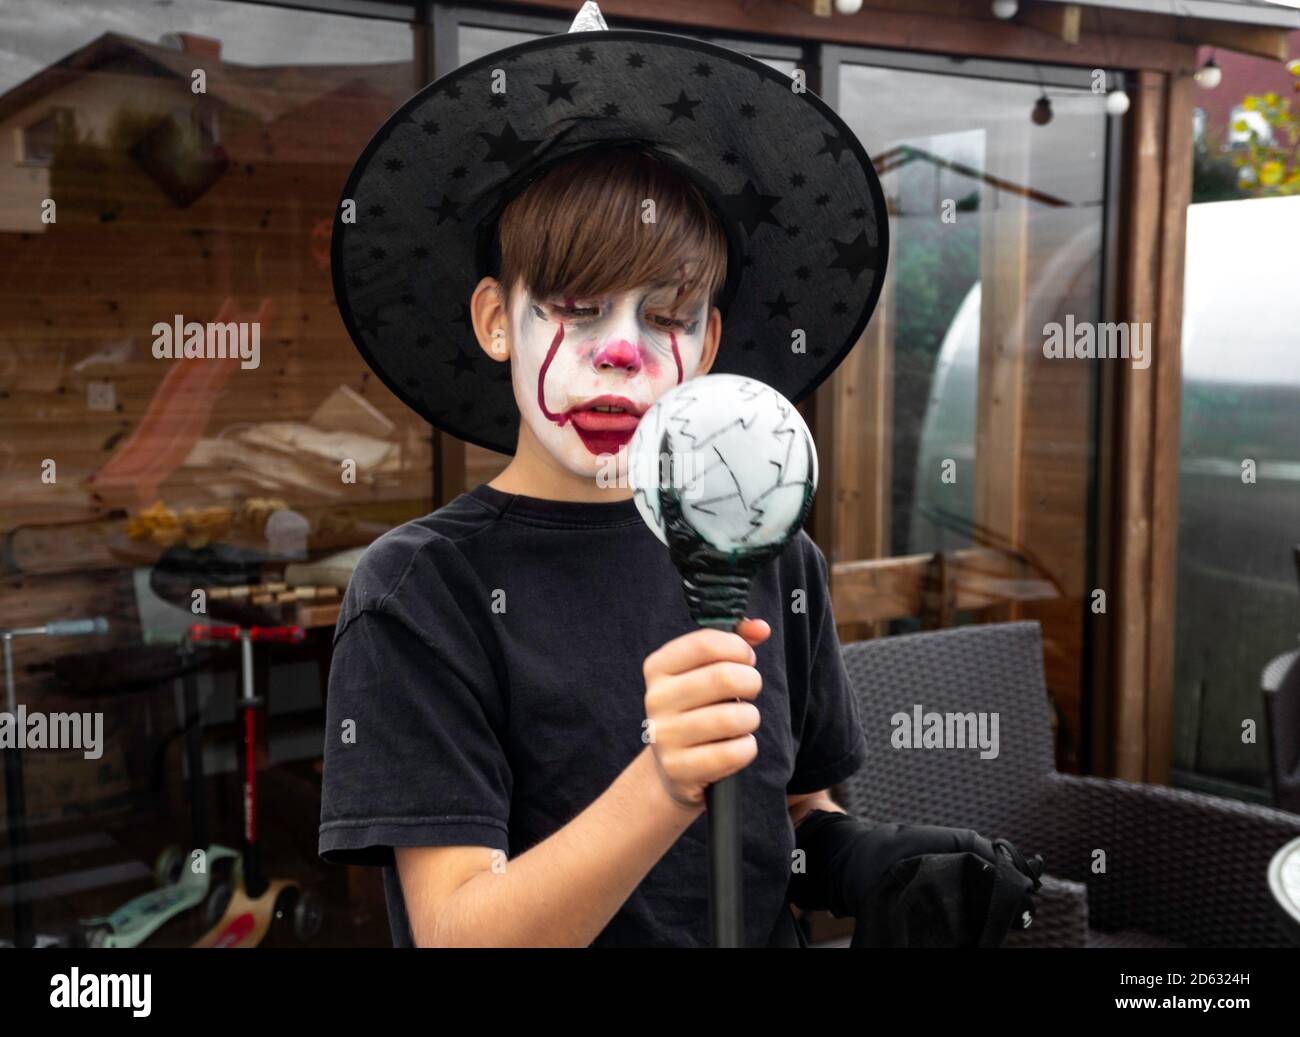 Make up clown ragazzo attore con cappello e costume di carnevale, clown pazzo, Halloween, carnevale facepaint come clown, espressioni pantomimiche Foto Stock